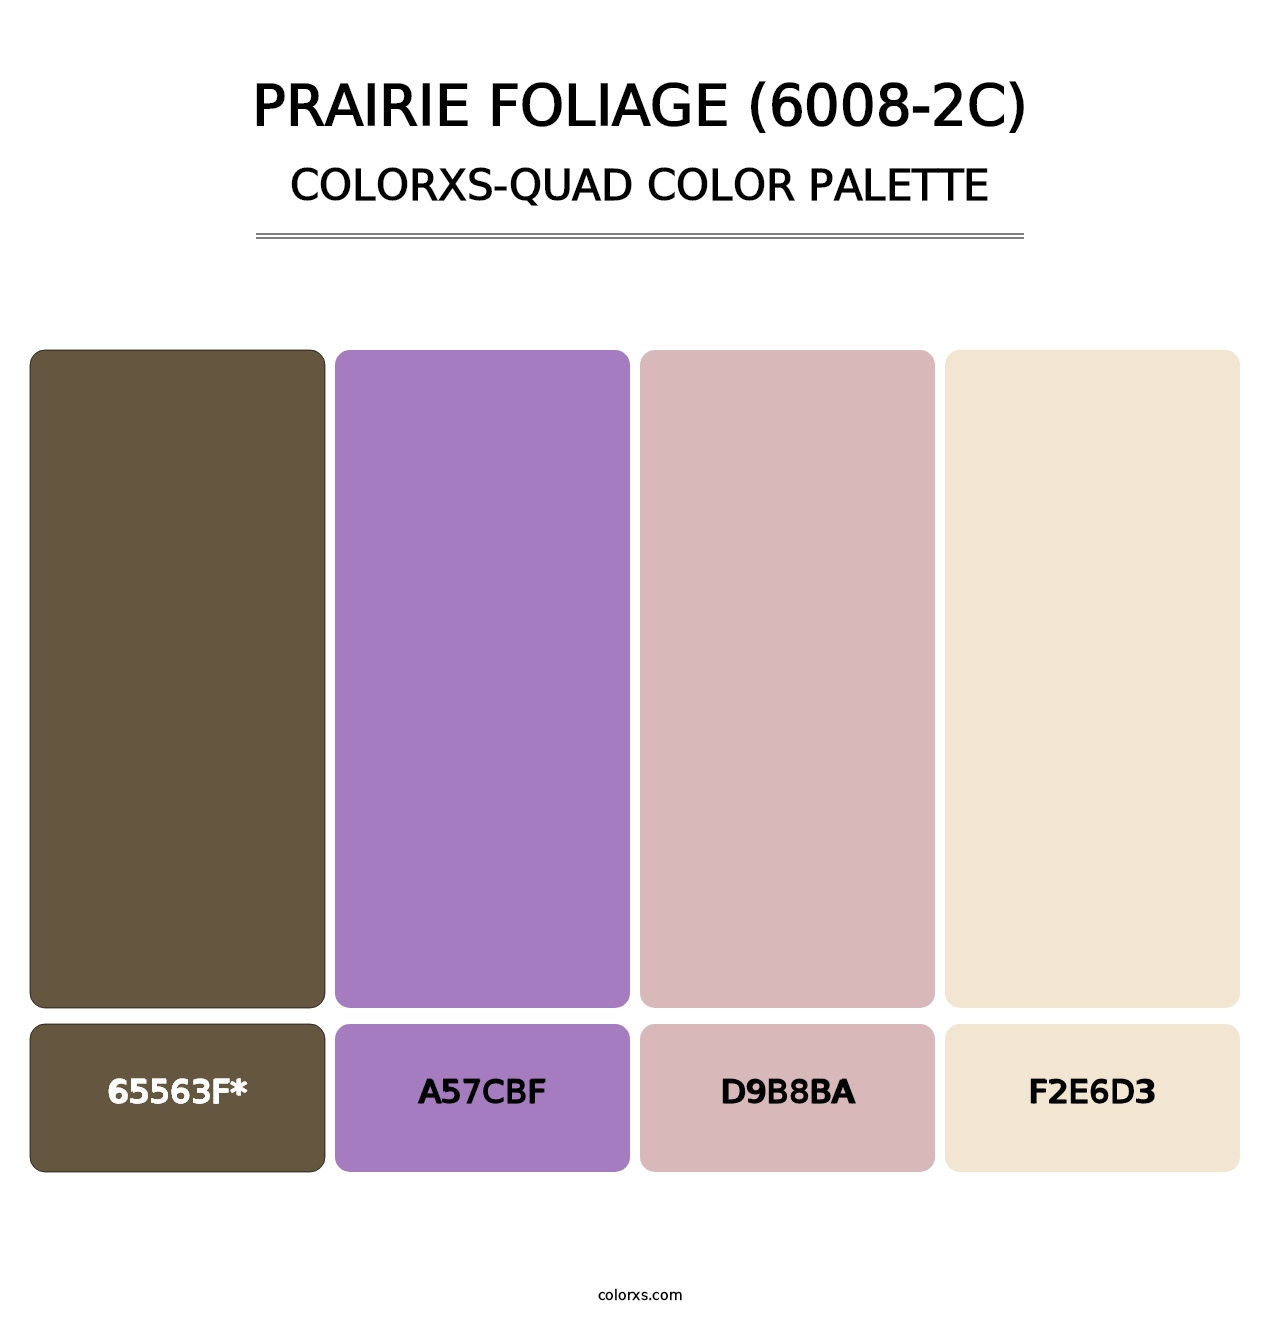 Prairie Foliage (6008-2C) - Colorxs Quad Palette